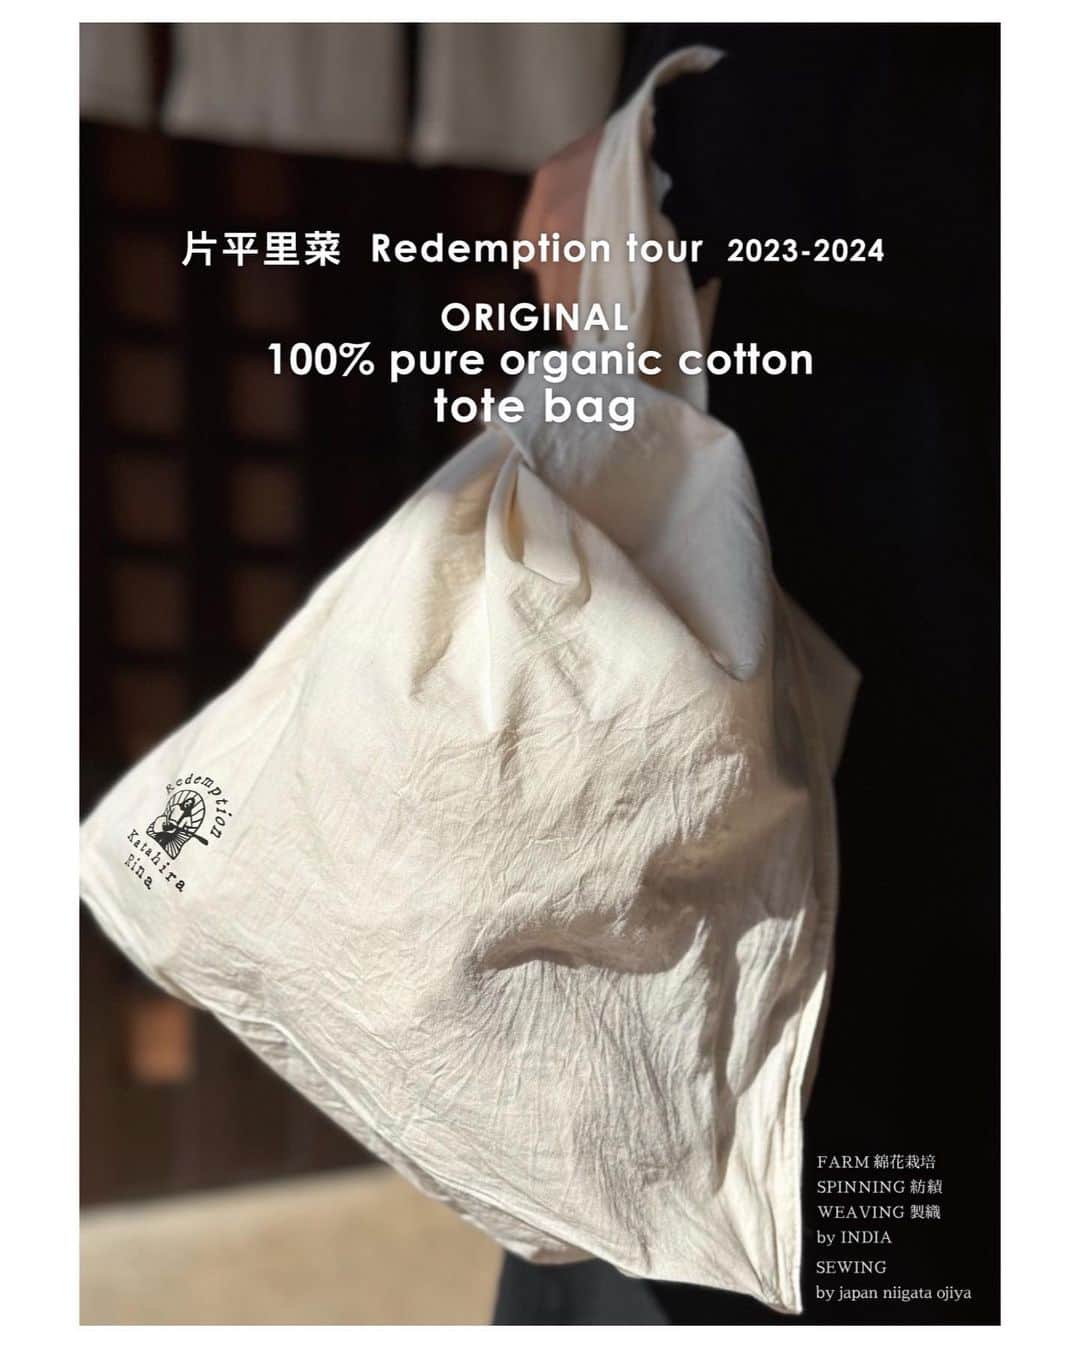 片平里菜のインスタグラム：「🫧ツアーグッズ  ORIGINAL 100%  PURE ORGANIC COTTON TOTE BAG   ・FARM(綿花栽培) インド ・SPINNING(紡績)  インド ・WEAVING&ORGANIZE(製織,整理) インド B.K.S TEXTILES PRIVATE LIMITED ・DESIGN&SEWING(デザイン,縫製) 新潟小千谷 color:キナリ material:organic cotton 100%(ブロード)  Redemptionのロゴがスタンプされたオーガニックコットンのトートバッグ🌱 DIAL HOUSE @dialhouse.ojiya のみなさんにひとつひとつ大切に作っていただきました◎ オーガニックコットンの栽培から縫製、製品になるまでの過程がすてきだし、なんといってもこのトートバッグのデザインはどこにもないんじゃないかな〜💡うつくしい。  そのままトートとしても、ランチョンマットとしても、ハンカチとしても、思いつく限り使い方は自由！生成り色のシンプルデザインをたのしむのもいいし、もし汚れたら染めてもいいし、絵を描いても好きな言葉を書いてもいいし、刺繍してみてもいいし、スタンプしてもいいし、、そんなふうに愛着を持ってもらえたらいいな〜。  お値段は3000円。ツアー中は通販の対応が難しいので、今は会場のみでの販売です。是非！」